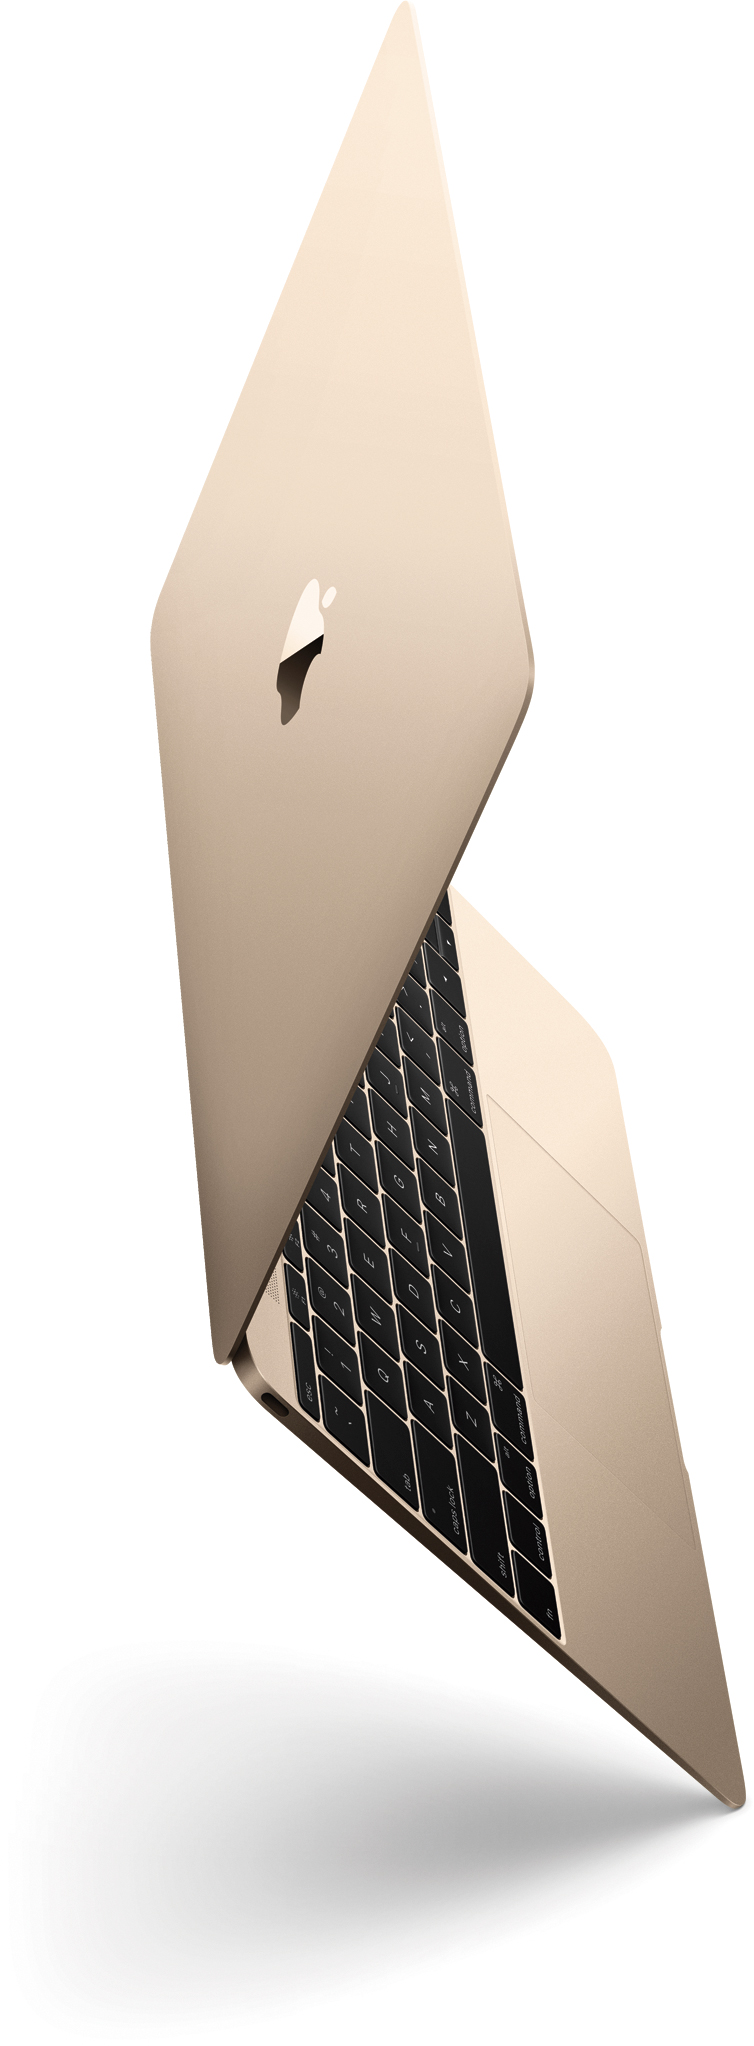 Golden and tilted MacBook